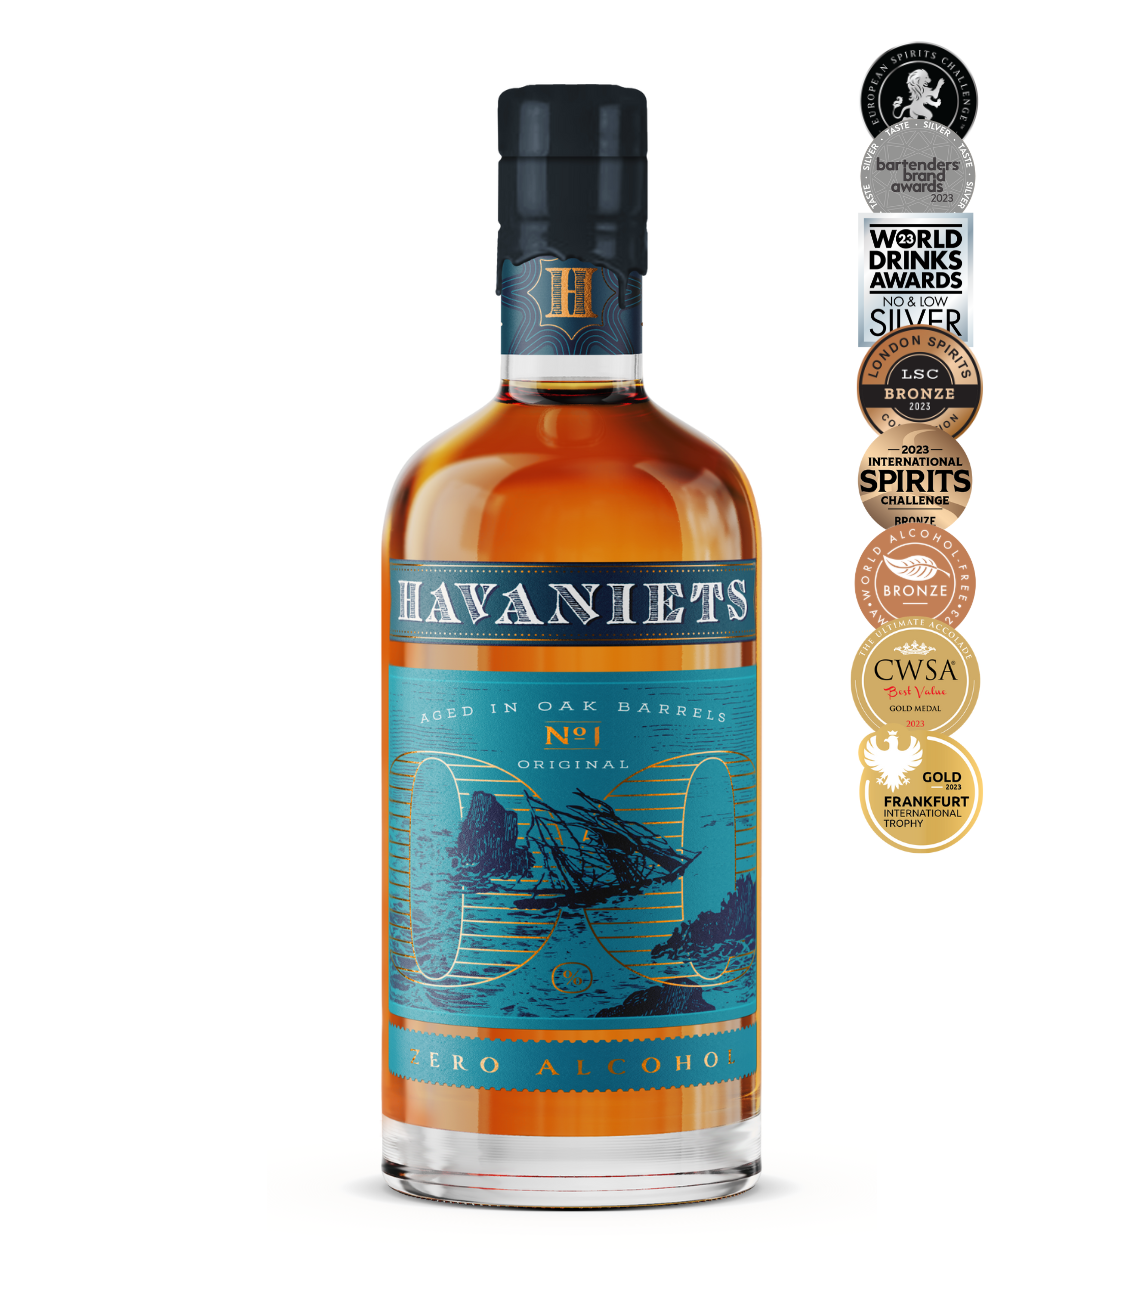 Havaniets traditionele 0.0% rum